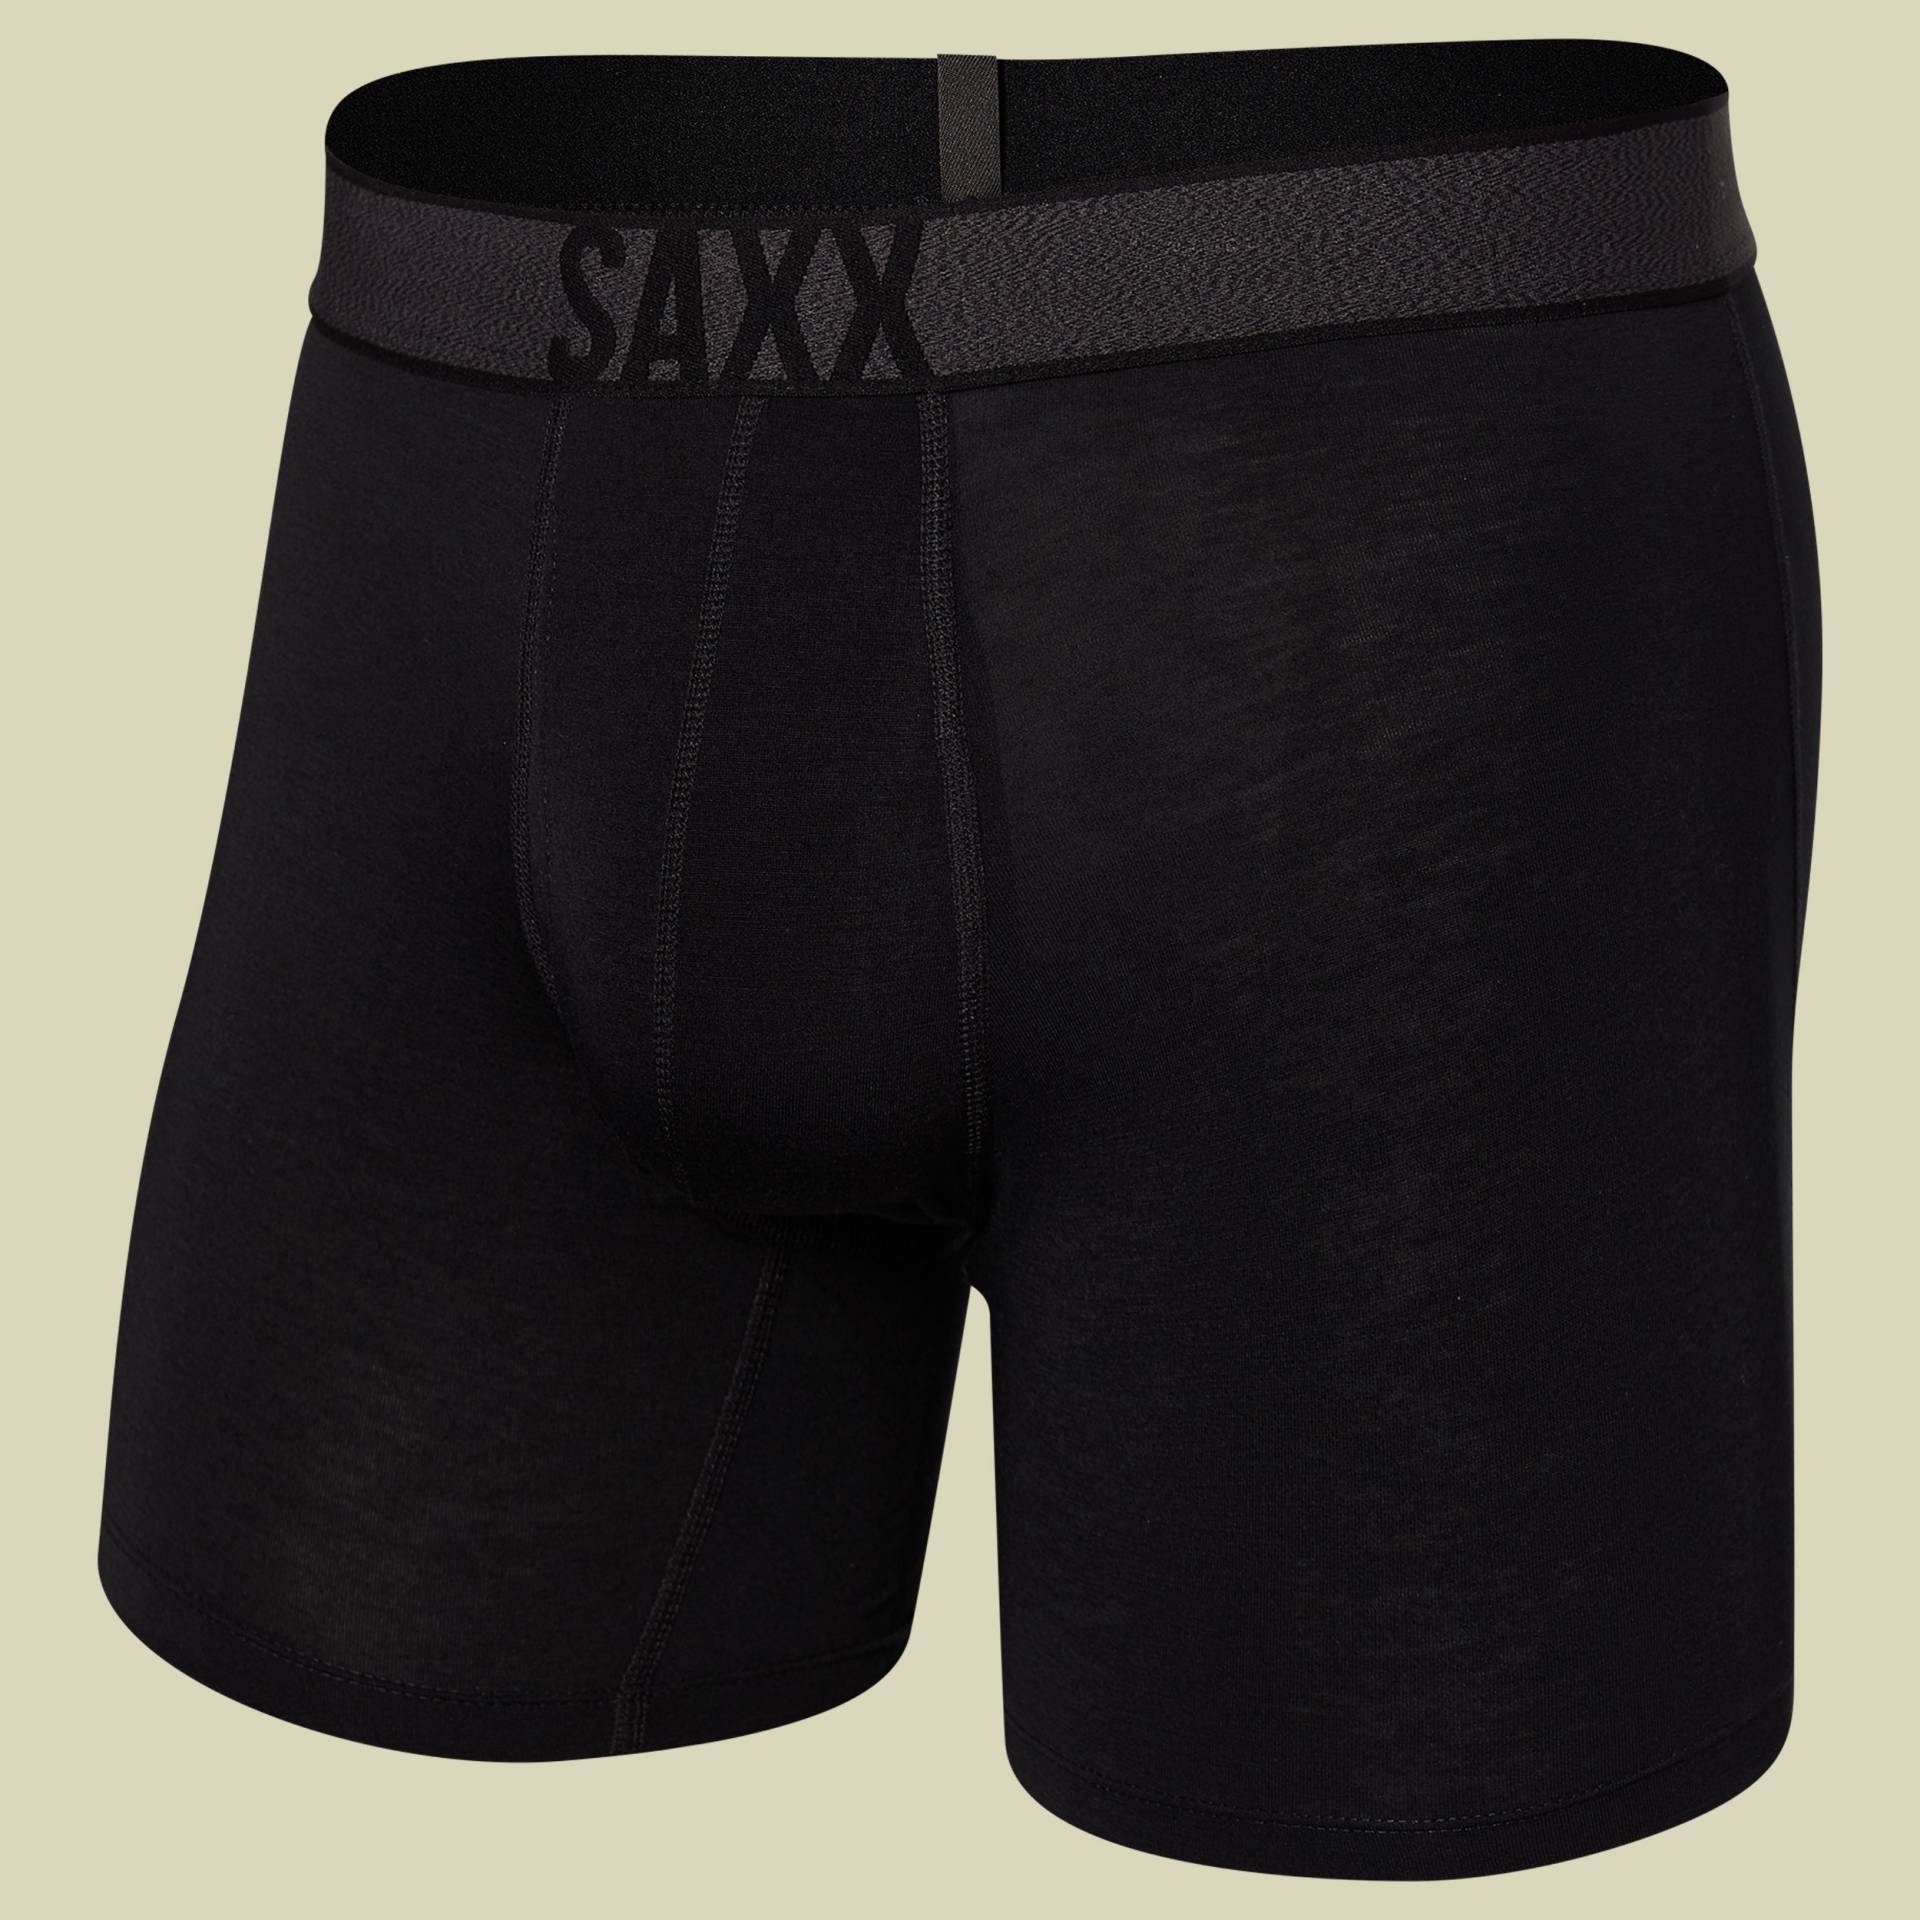 Roast Master Mid-Weight Boxer Brief Fly Men Größe M  Farbe black von Saxx